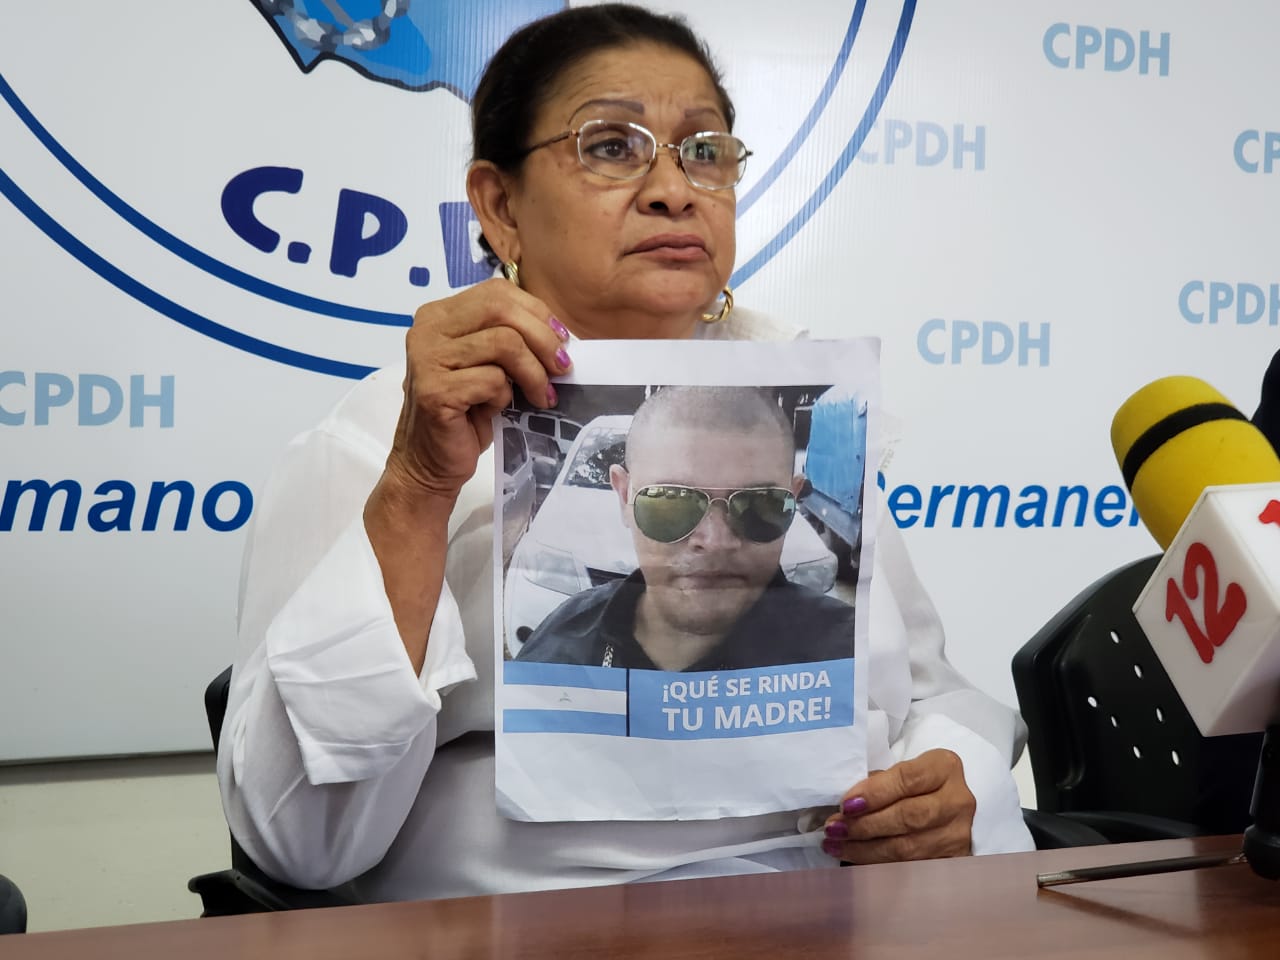 CIDH exige al régimen investigar el paradero de ciudadano desaparecido hace un año. Foto: Geovanny Shiffman/Artículo 66